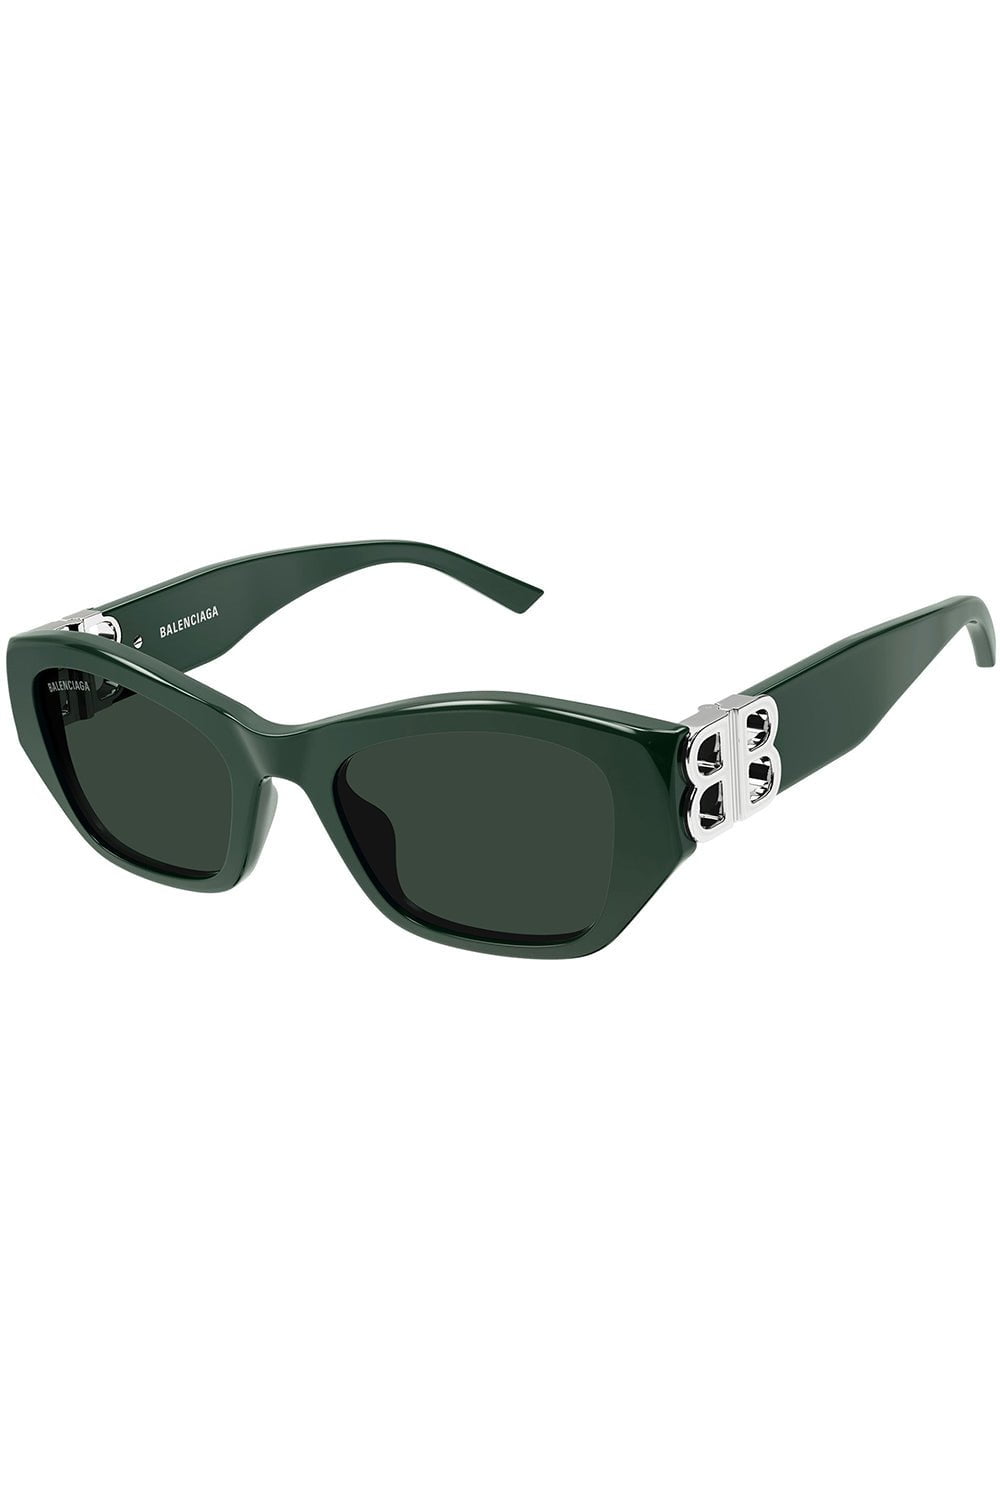 BALENCIAGA-Rectangle Logo Sunglasses-GREEN